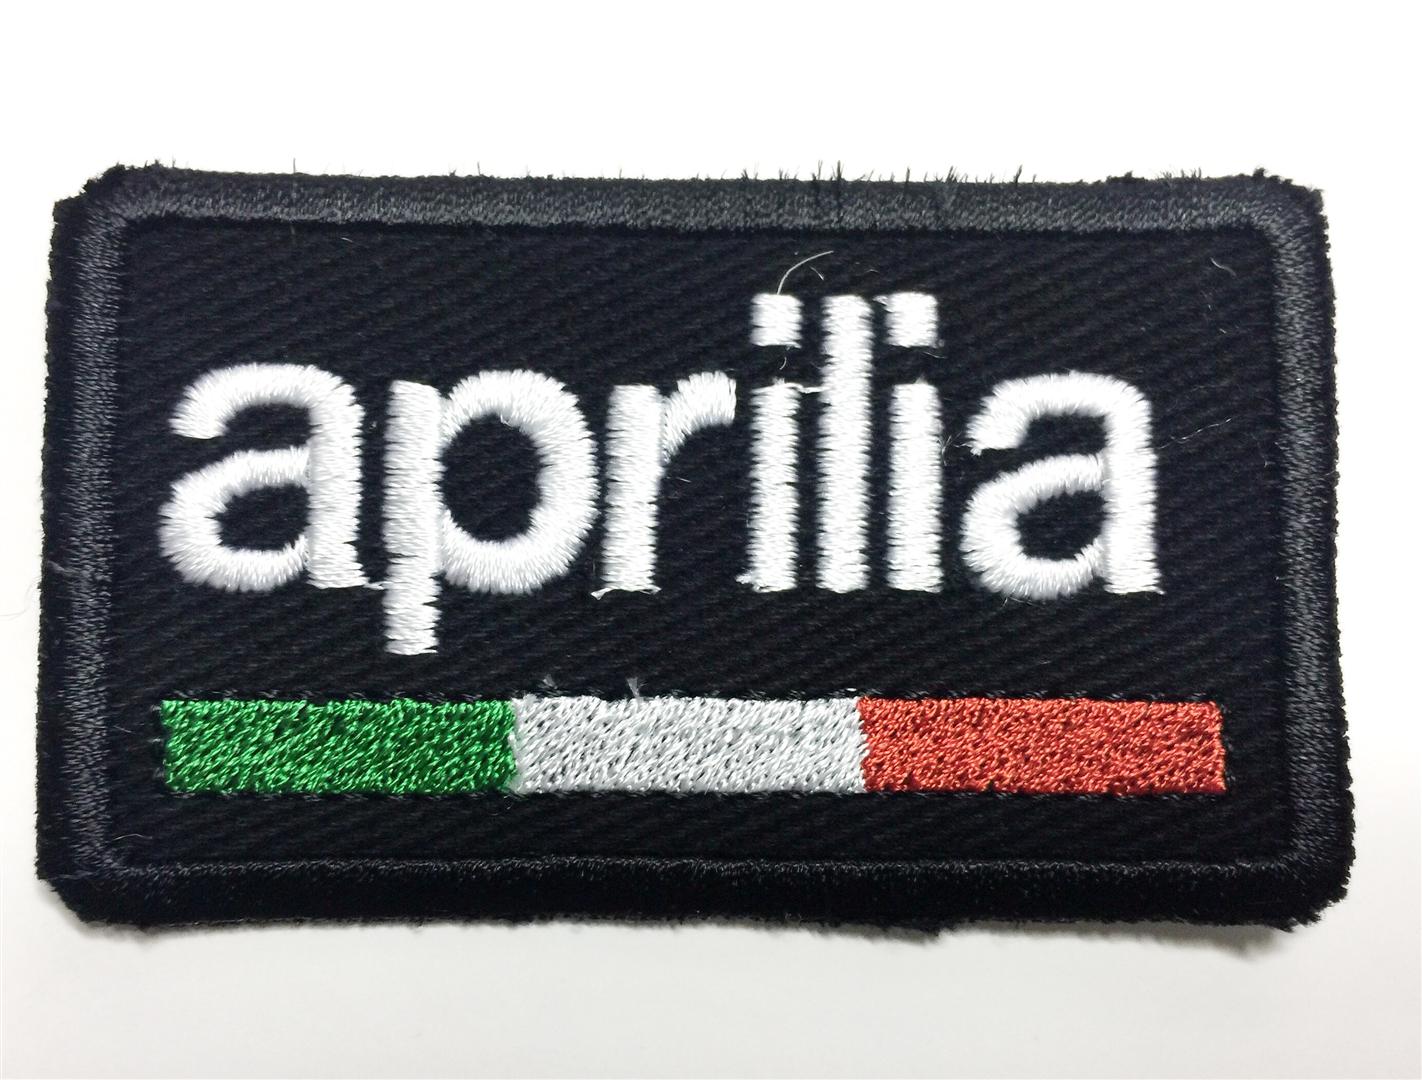 Aprilia embroidered cloth badge 